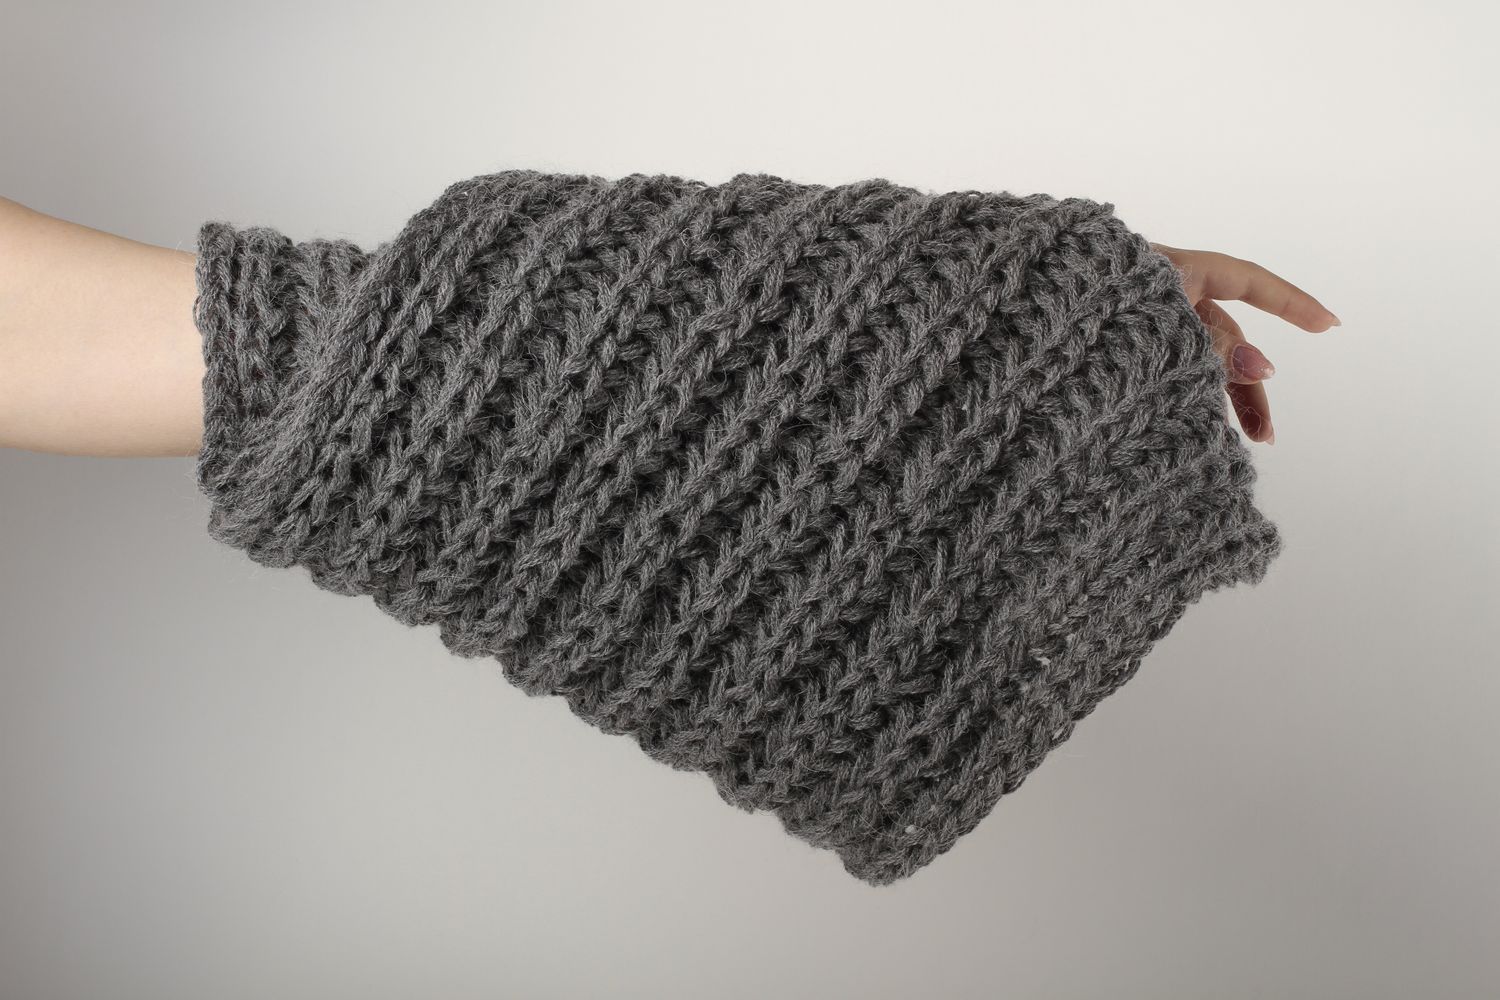 Écharpe grise faite main Vêtement femme tricot en laine chaude Idée cadeau photo 1